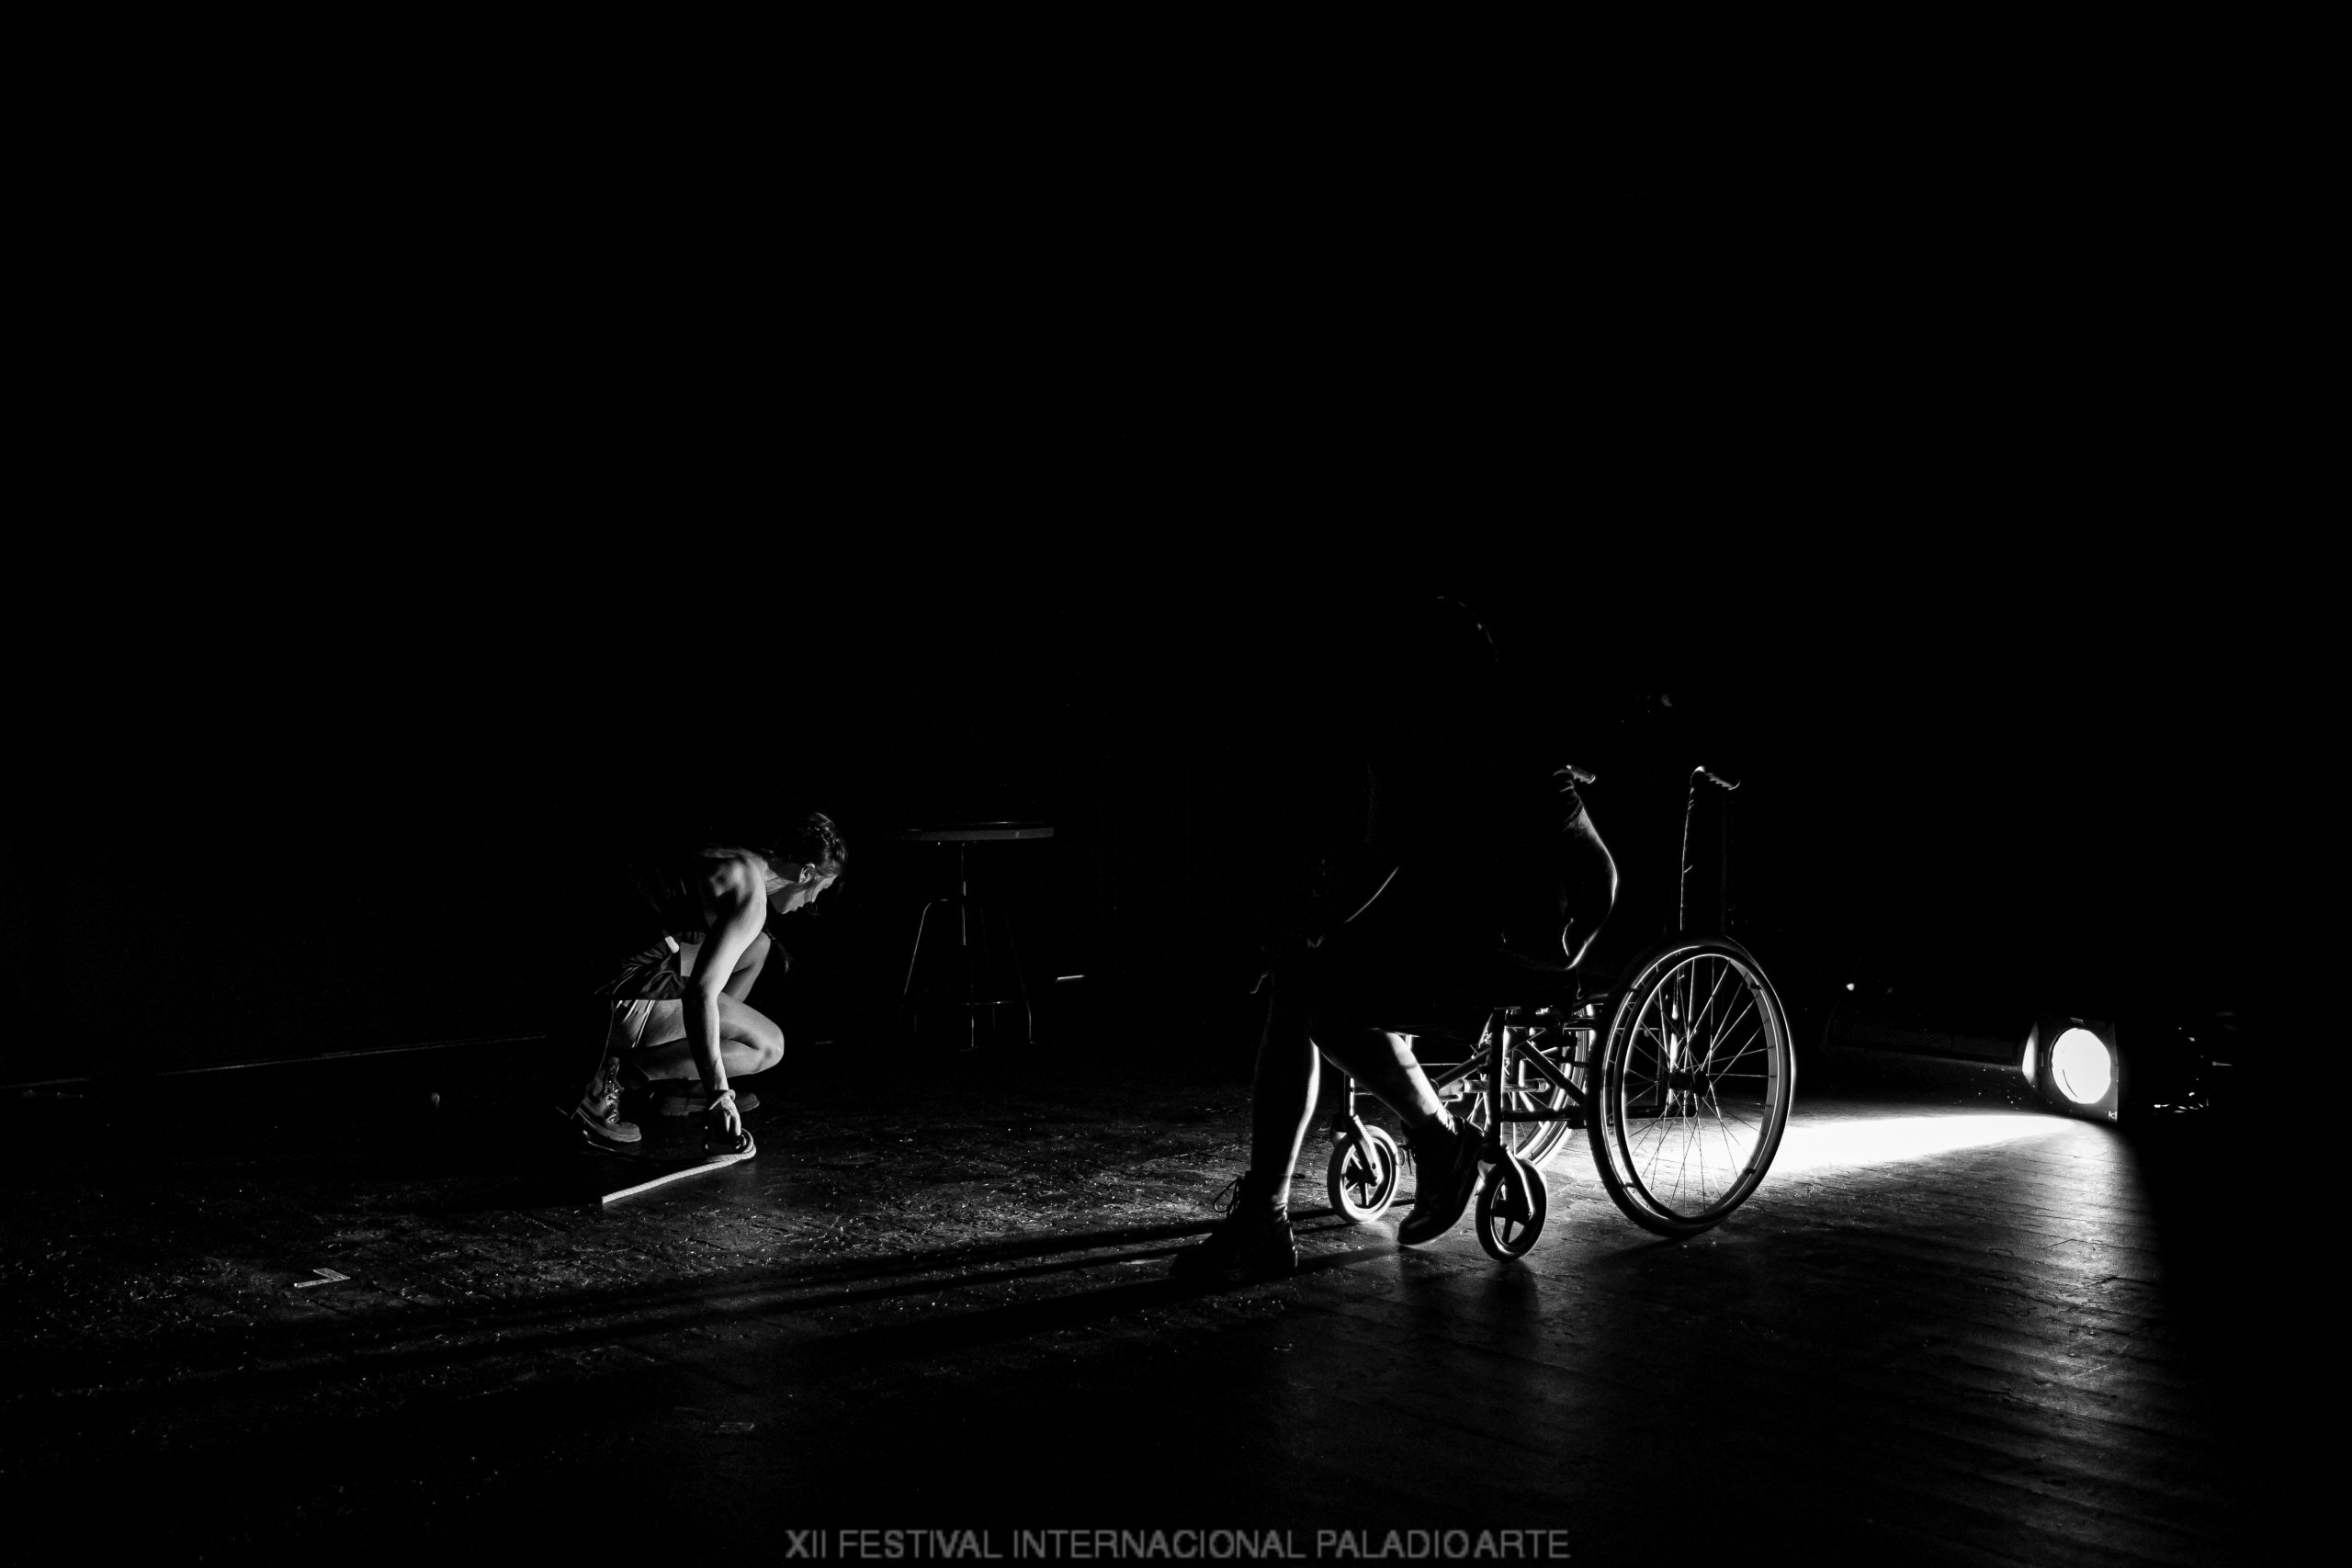 Una silla de ruedas, una persona agachada iluminadas por una sola luz